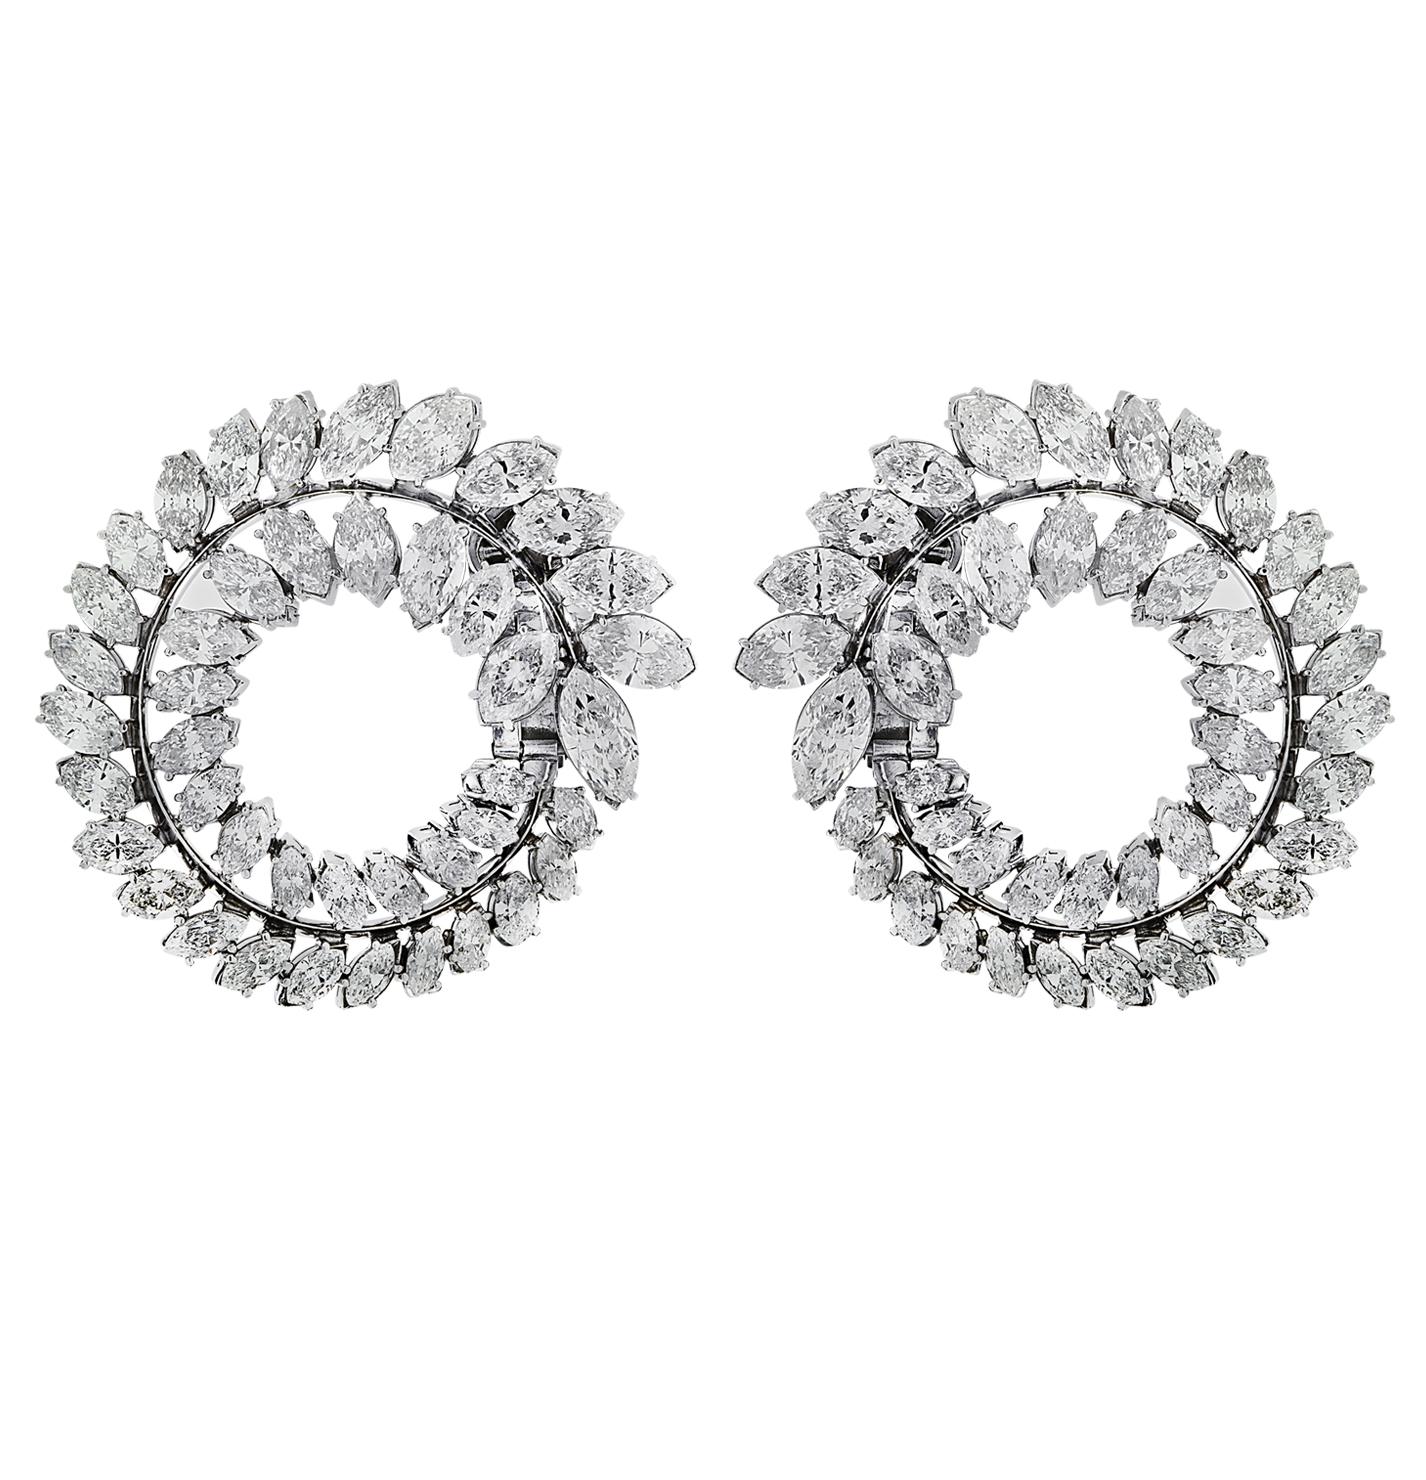 Atemberaubende Diamantohrringe um 1950 aus Platin mit 86 Diamanten im Marquise-Schliff mit einem Gesamtgewicht von ca. 28,25 Karat, Farbe G-I, Reinheit VS-SI. Zwei Reihen von Diamanten sind in offenen Kreisen angeordnet, die sich von der Vorderseite